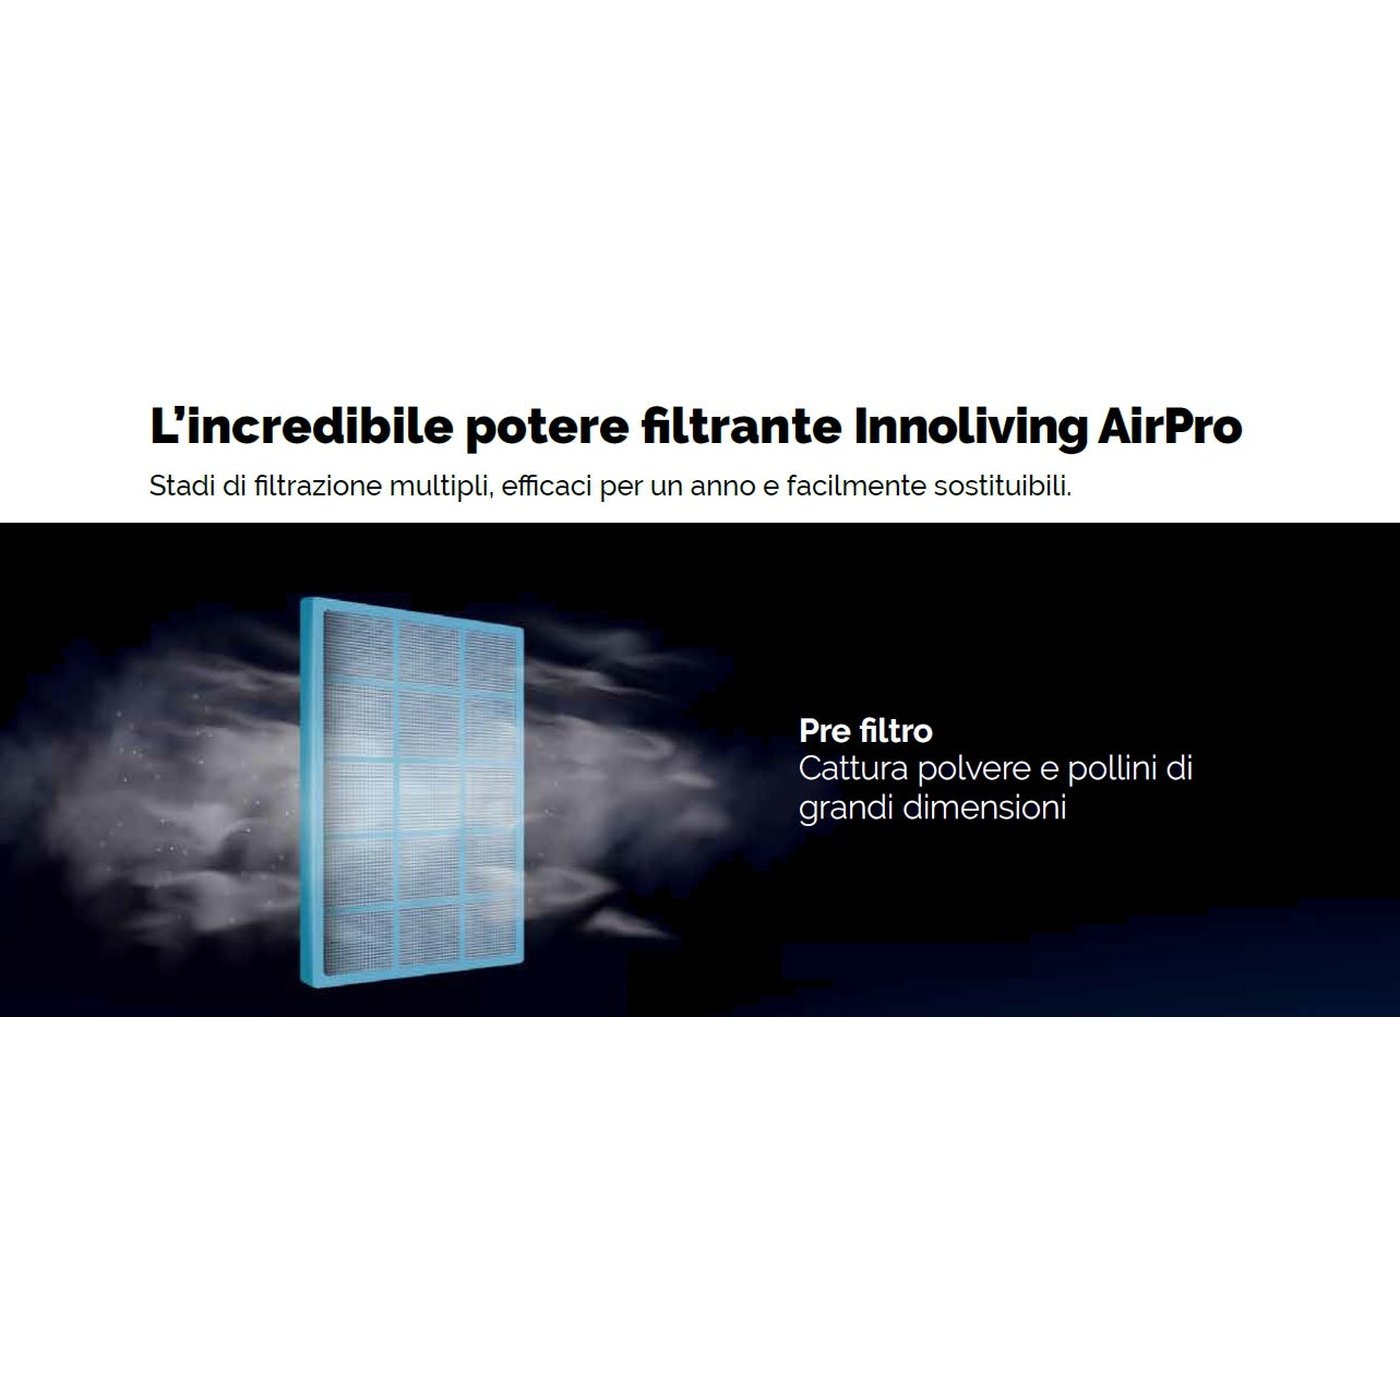 Purificatore d'aria Professional Ultra filtro HEPA, Ioni negativi, PM 2.5 Smart Wi-fi Innoliving Airpro INN-558